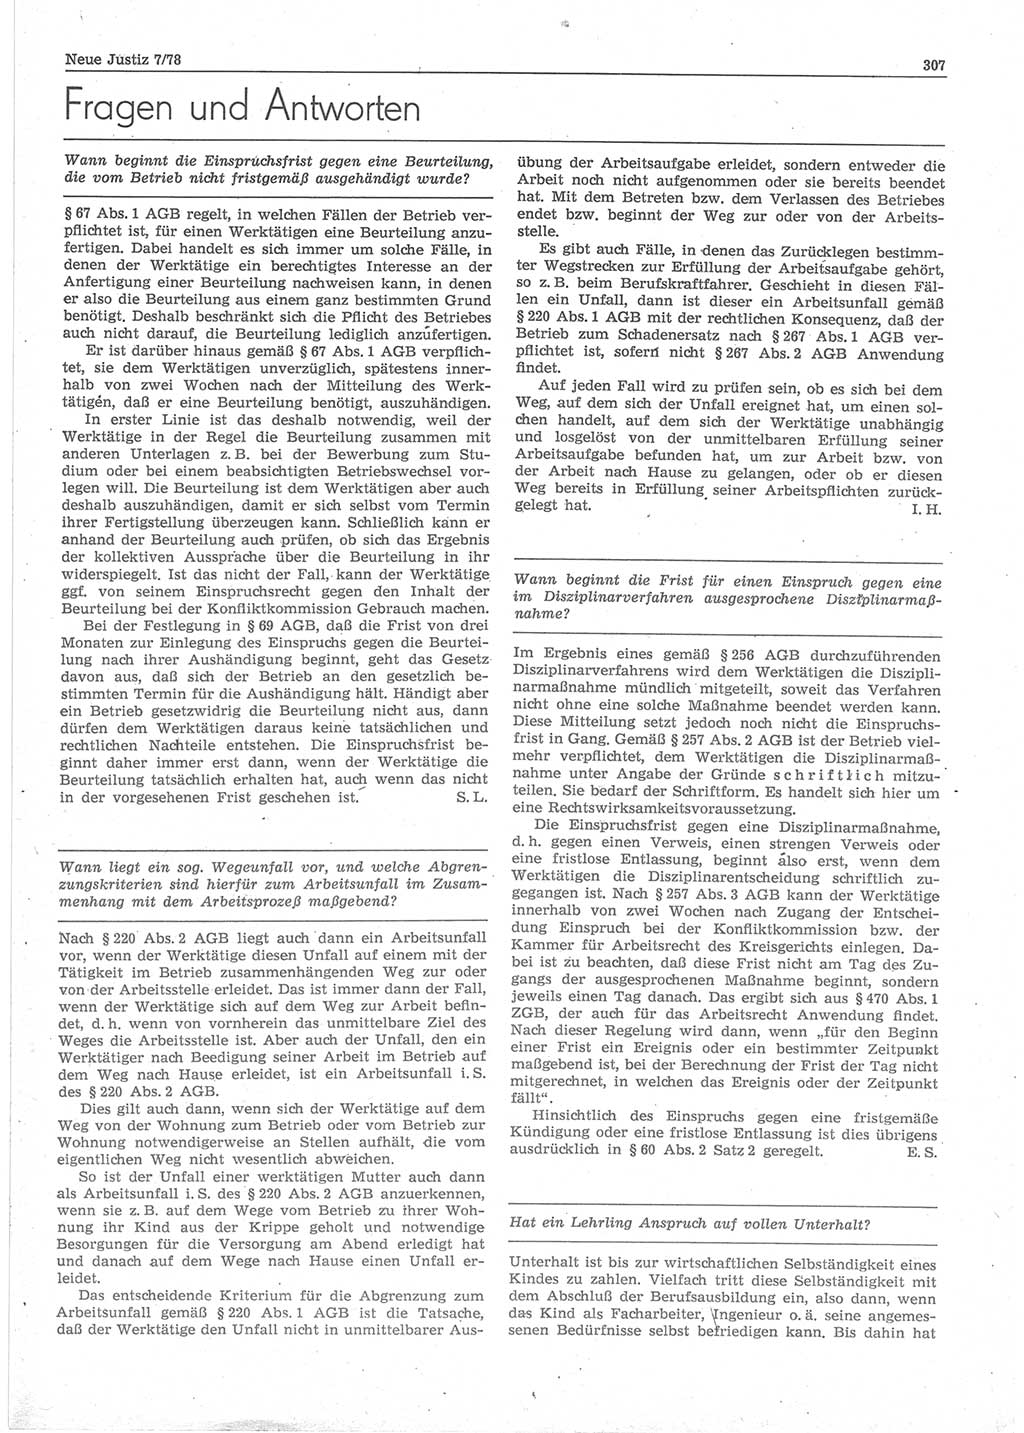 Neue Justiz (NJ), Zeitschrift für sozialistisches Recht und Gesetzlichkeit [Deutsche Demokratische Republik (DDR)], 32. Jahrgang 1978, Seite 307 (NJ DDR 1978, S. 307)